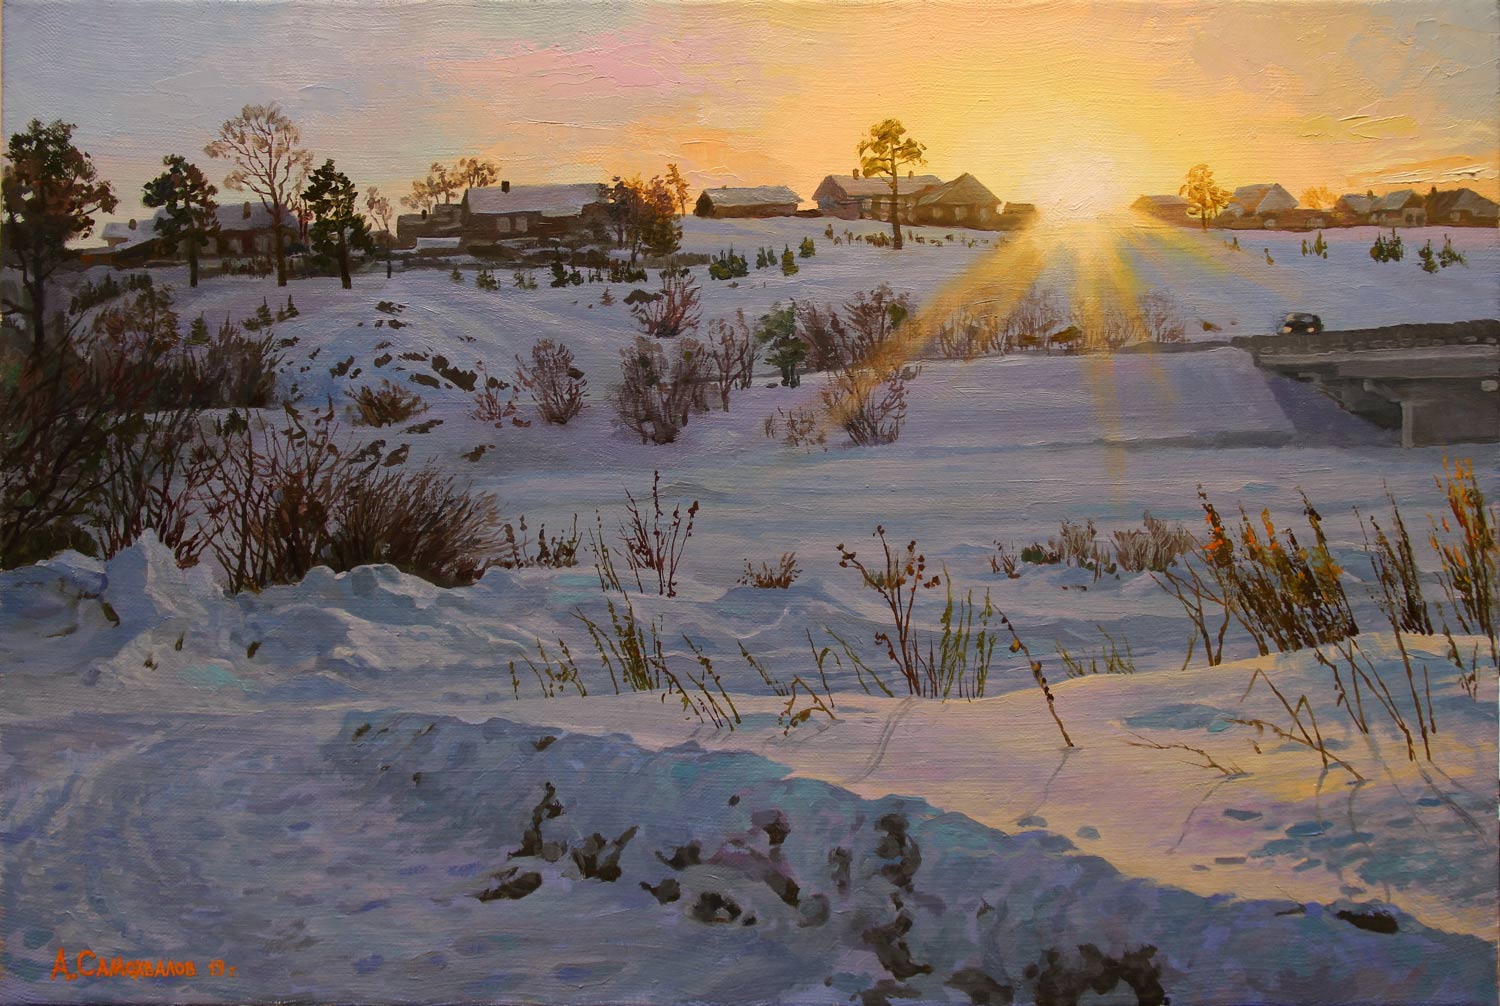 The Sunset in Beklenischeva - 1, Alexander Samokhvalov, Buy the painting Oil